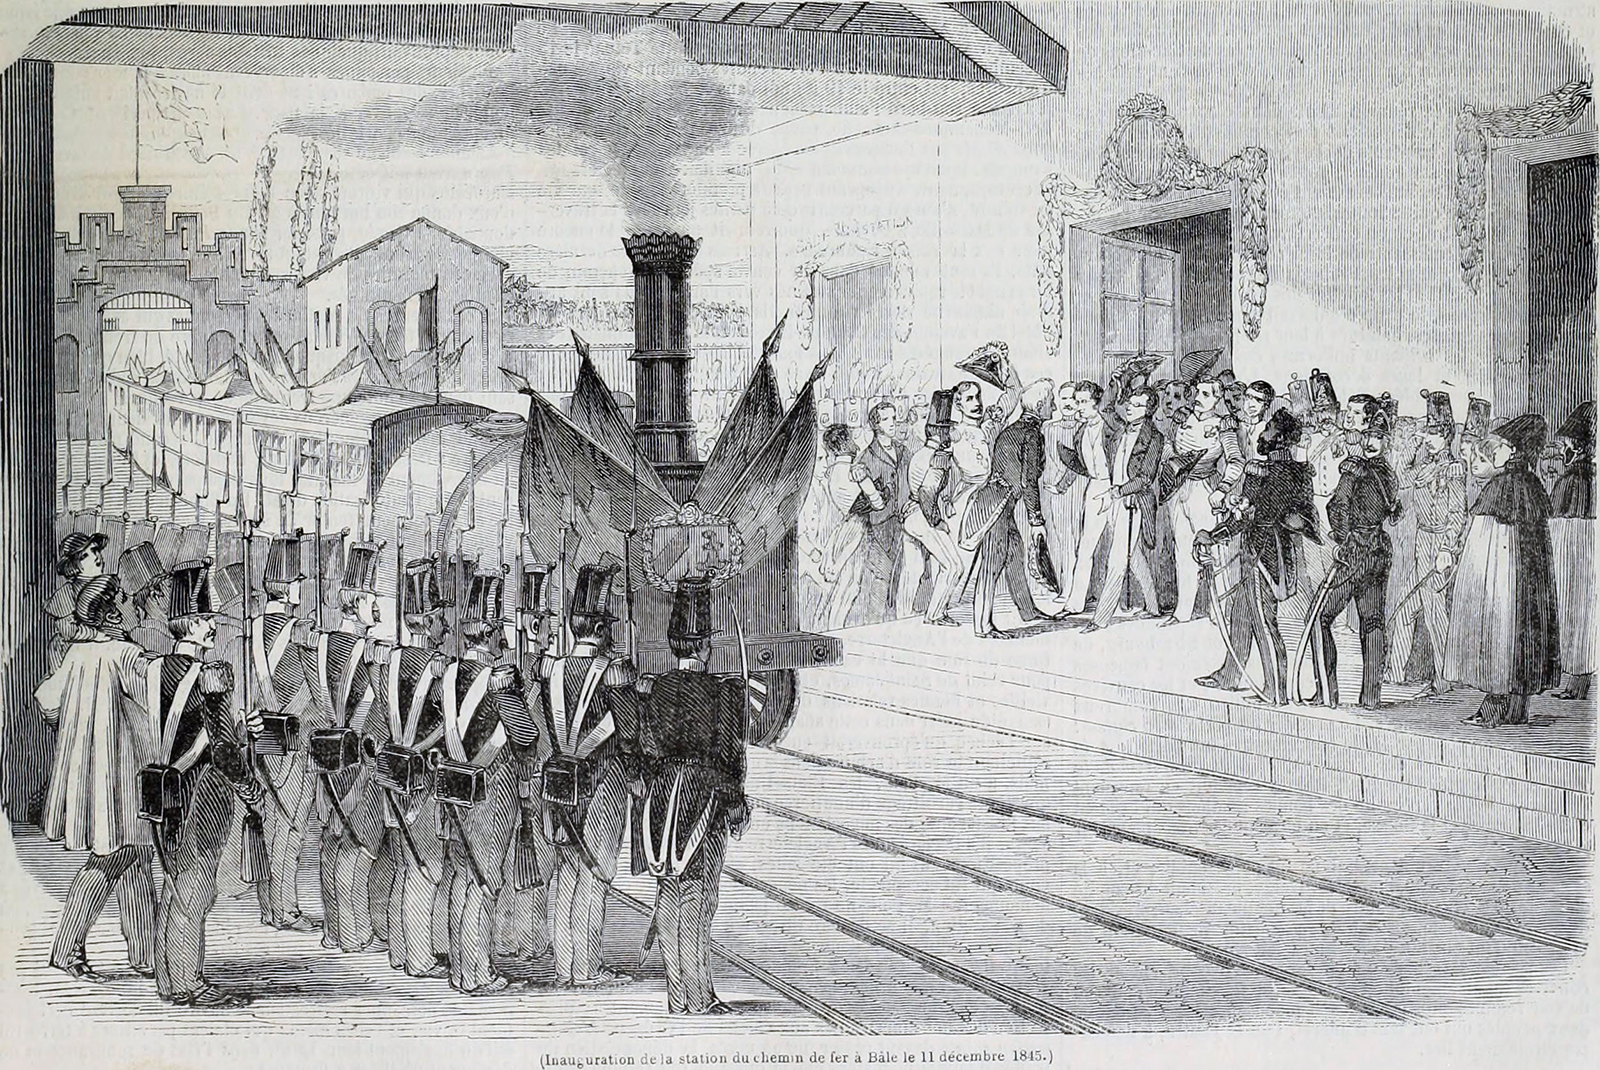 Dibujo antiguo que muestra la llegada de un tren a la estación